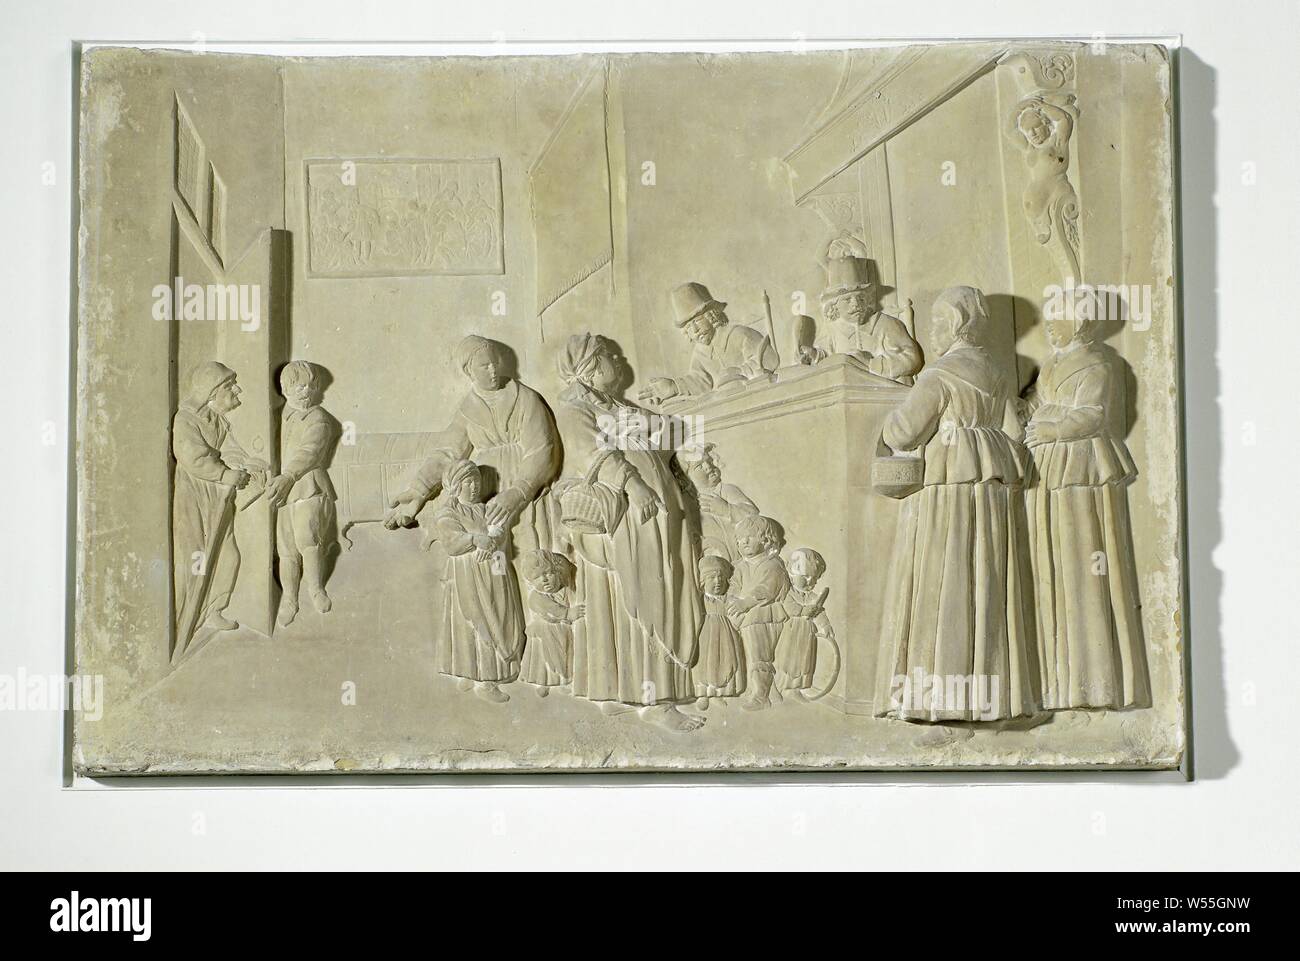 Rivolta verso il mattone della Nieuwezijds Huiszittenhuis con una rappresentazione della registrazione degli afflitti, Albert Jansz. Vinckenbrinck (attribuito a), Amsterdam, 1649 - 1650, arenaria, h 75 cm × W 113 cm × d 20 cm × W 188 kg Foto Stock